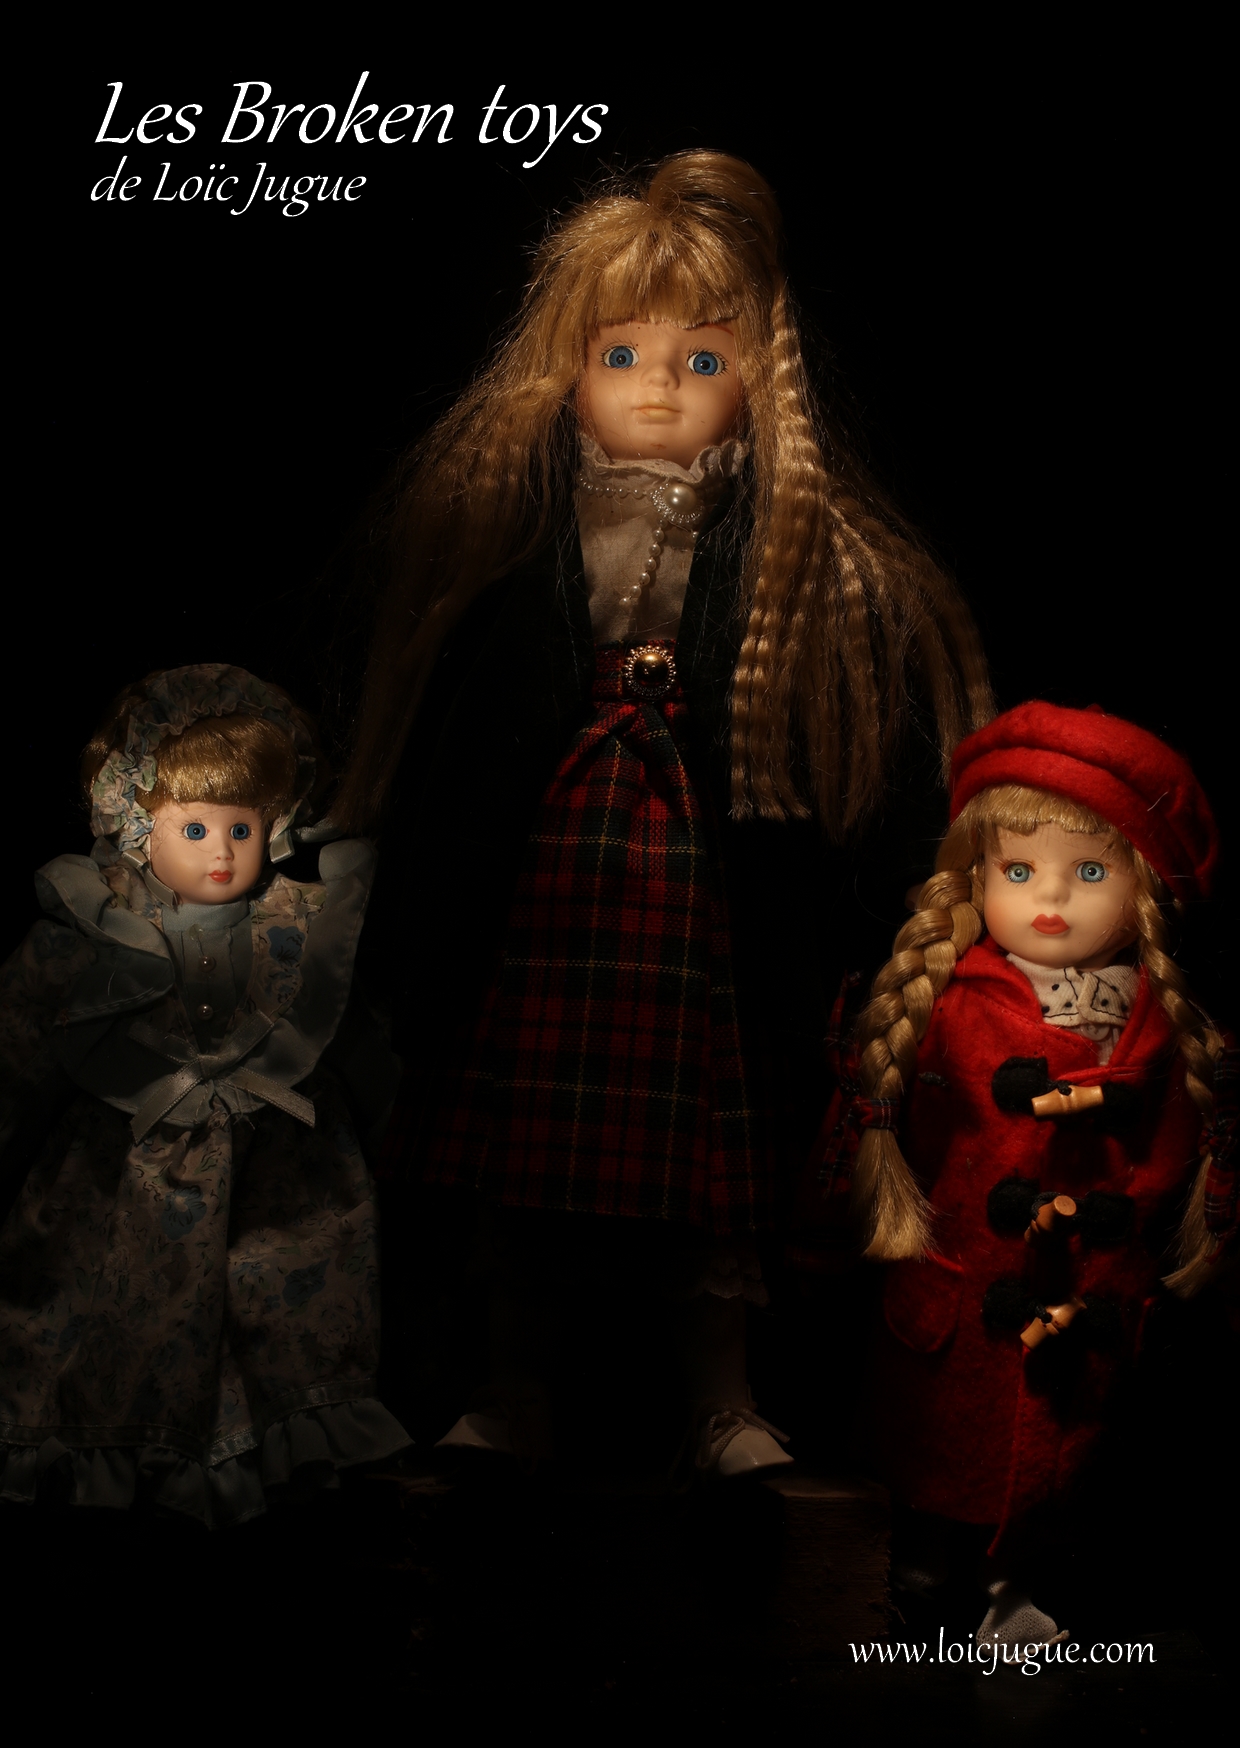 Les broken toys de Loïc Jugue: Les trois soeurs